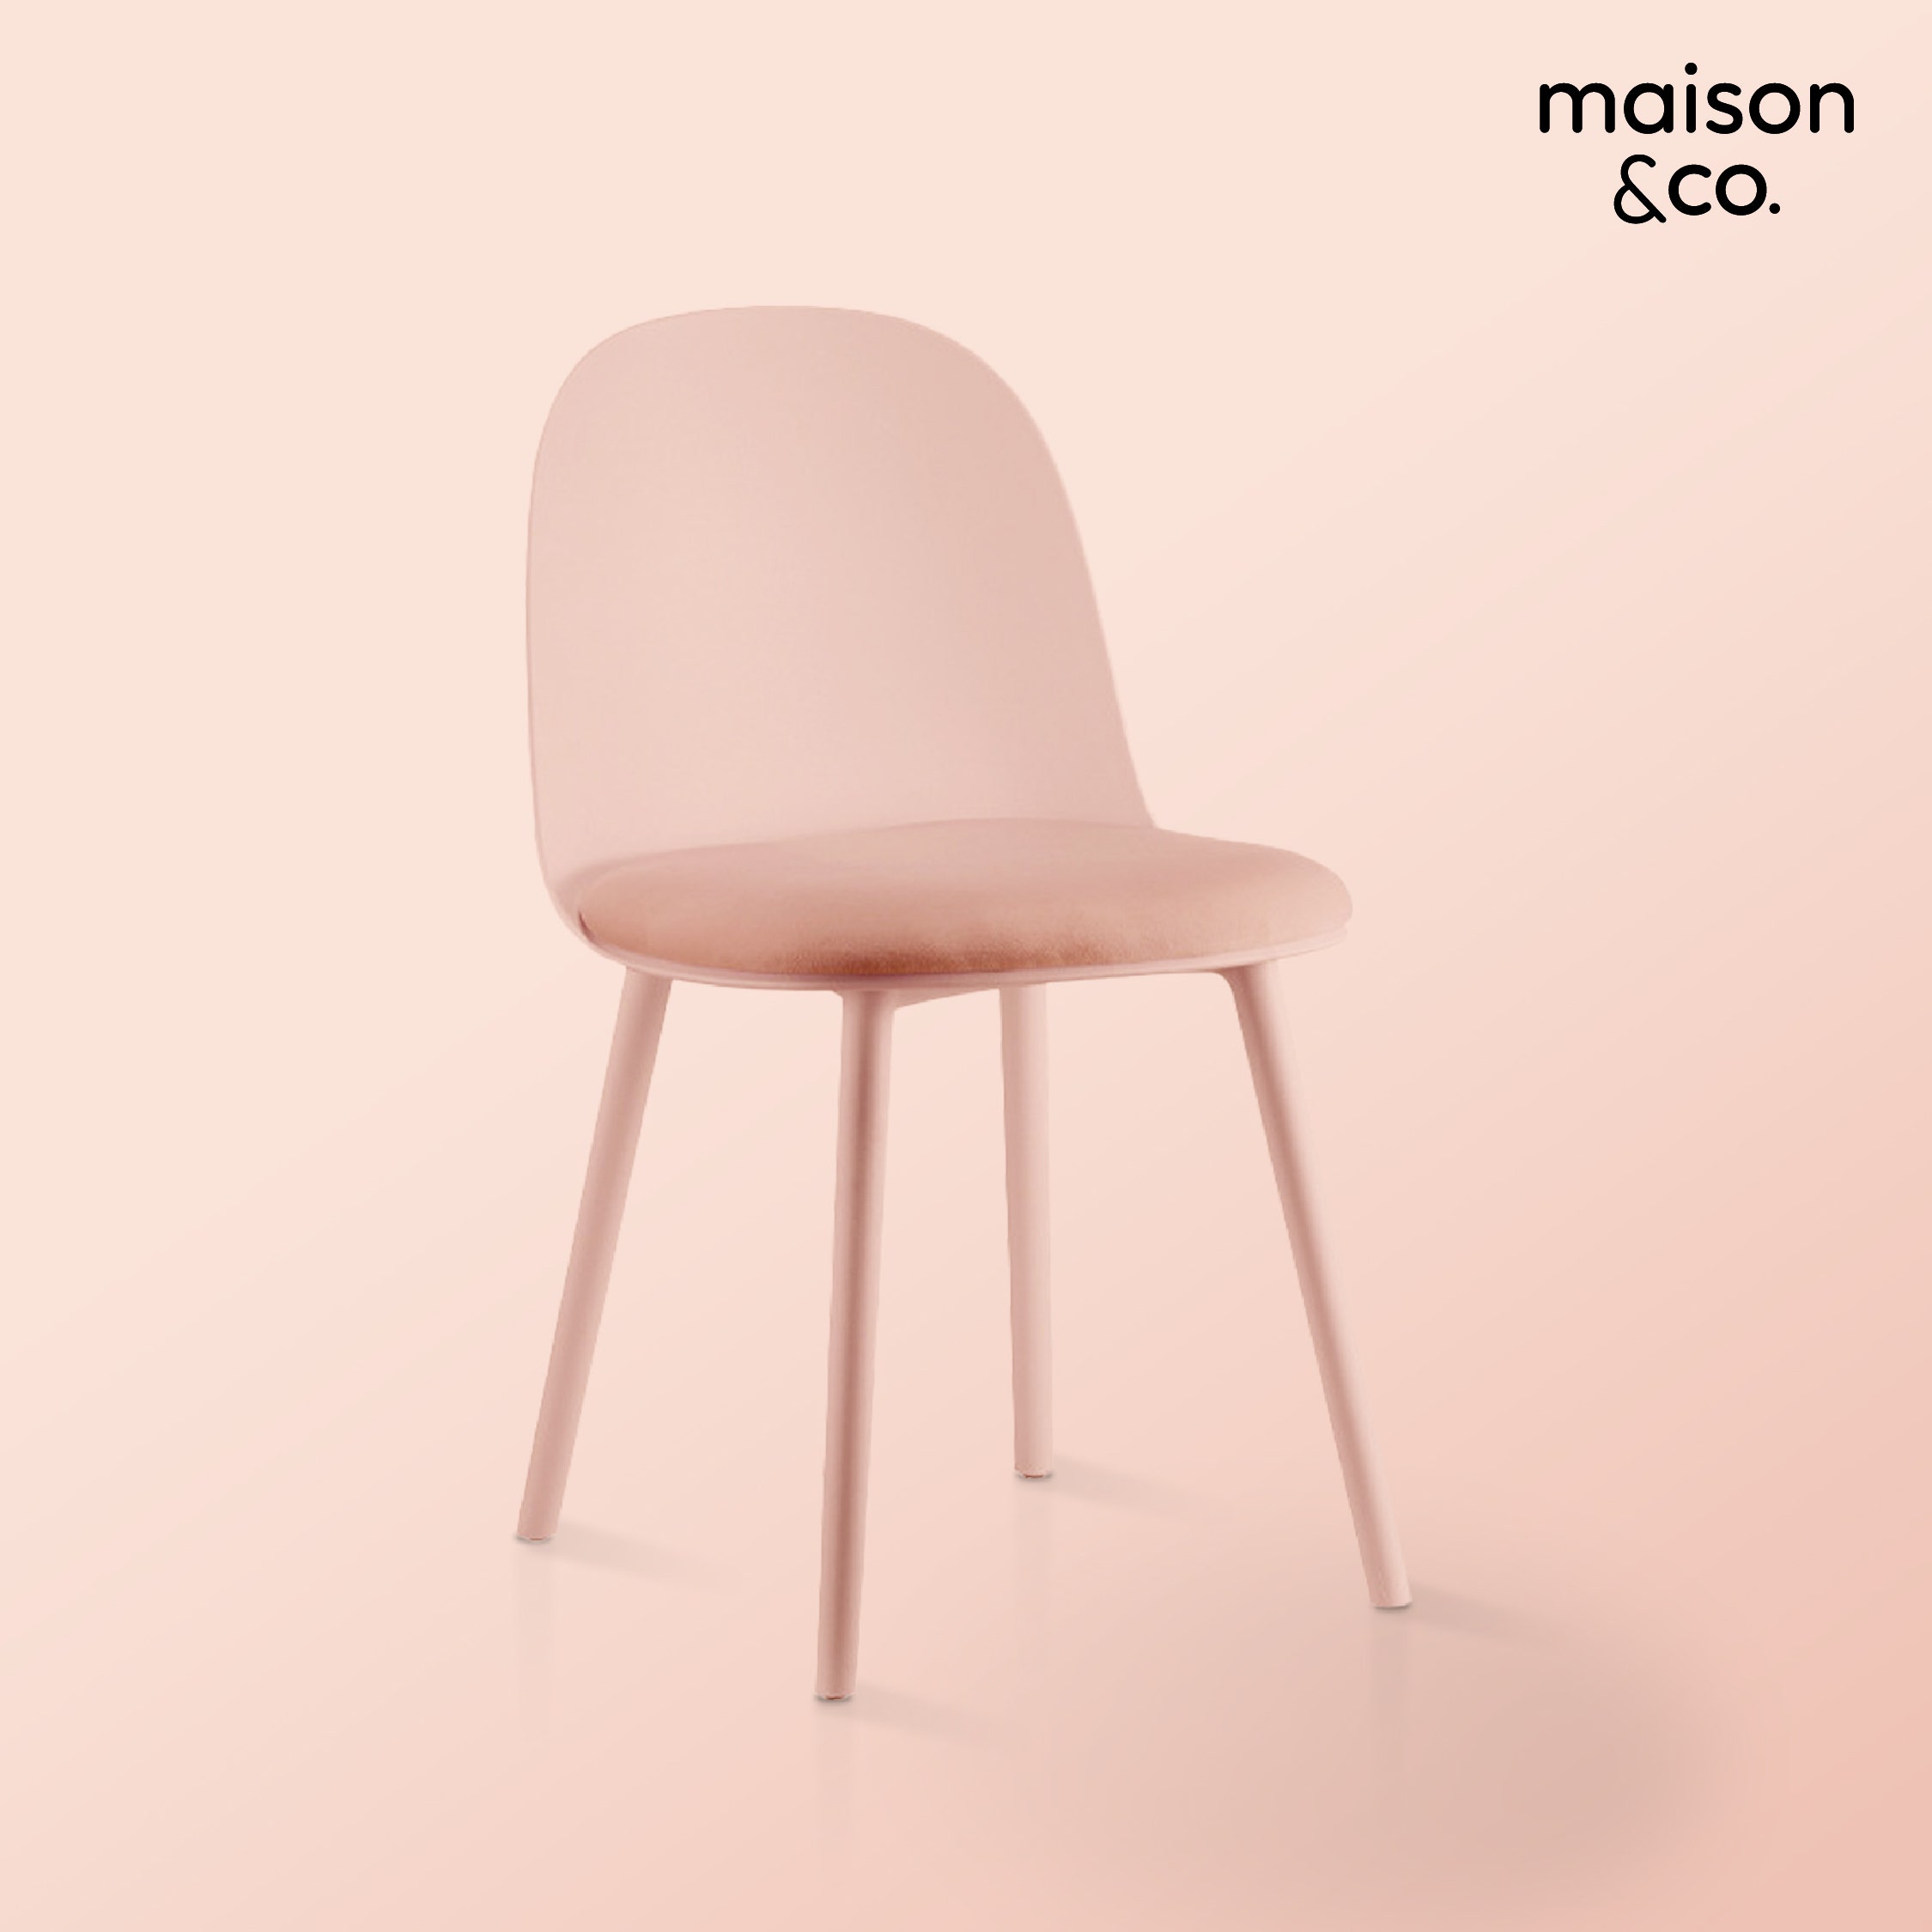 เก้าอี้YOOKO เบาะผ้าสีชมพู01